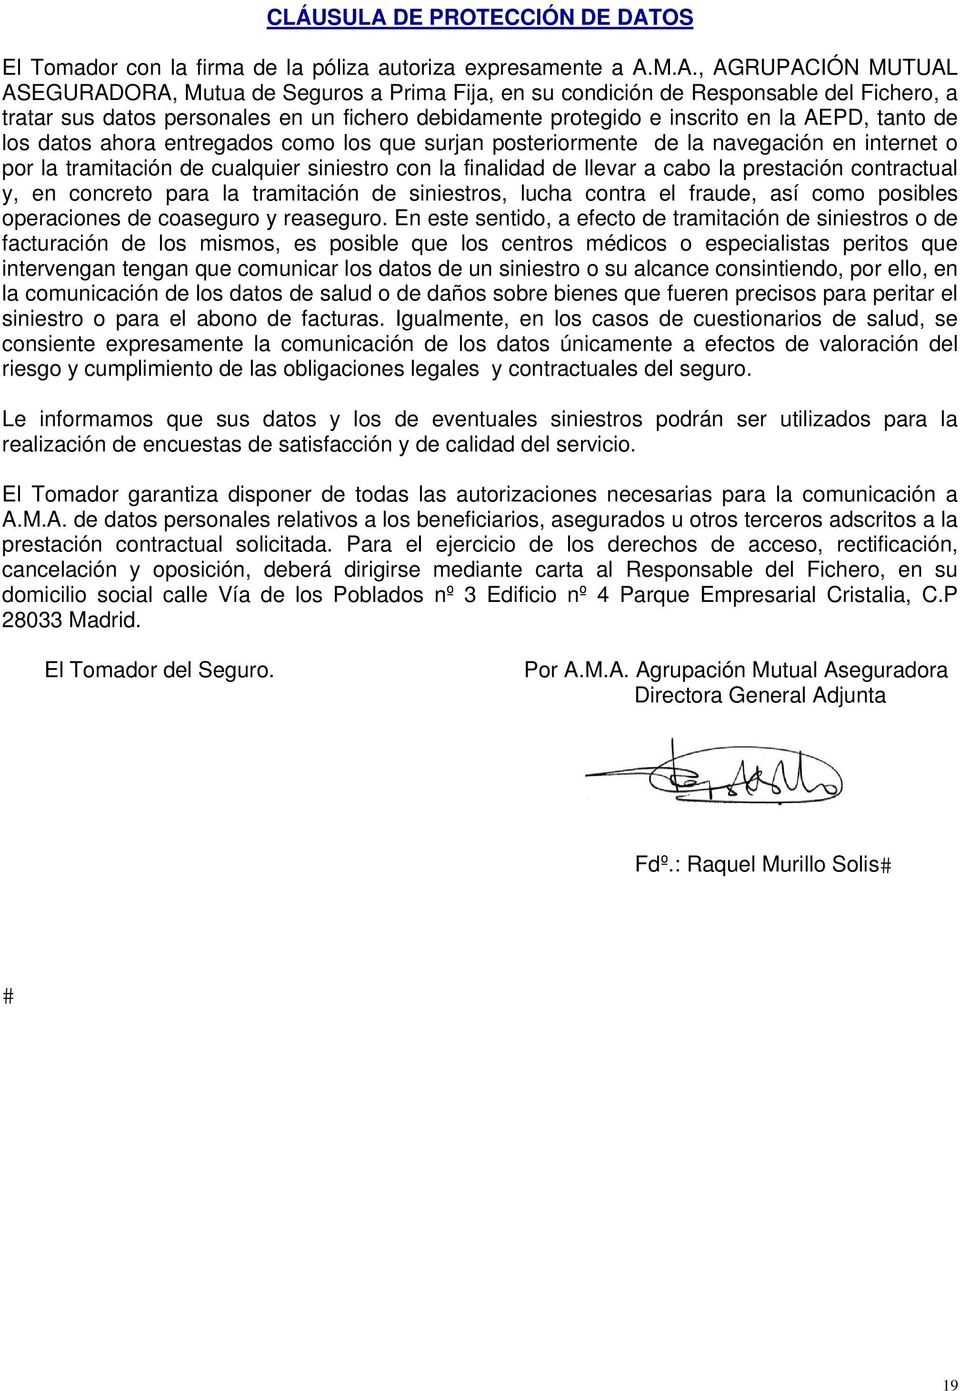 OS El Tomador con la firma de la póliza autoriza expresamente a A.